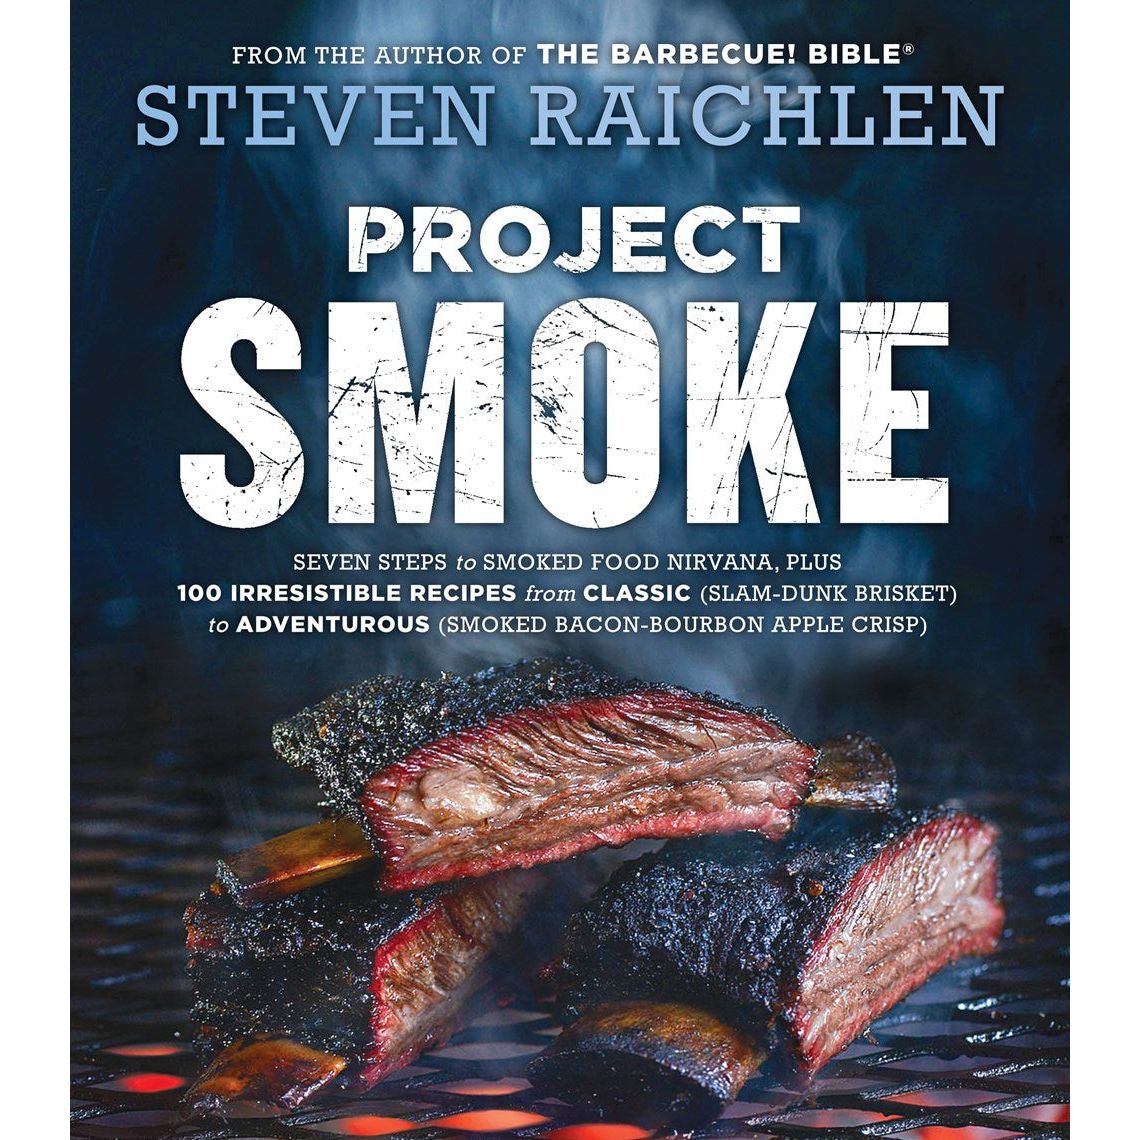 Project Smoke (Steven Raichlen)